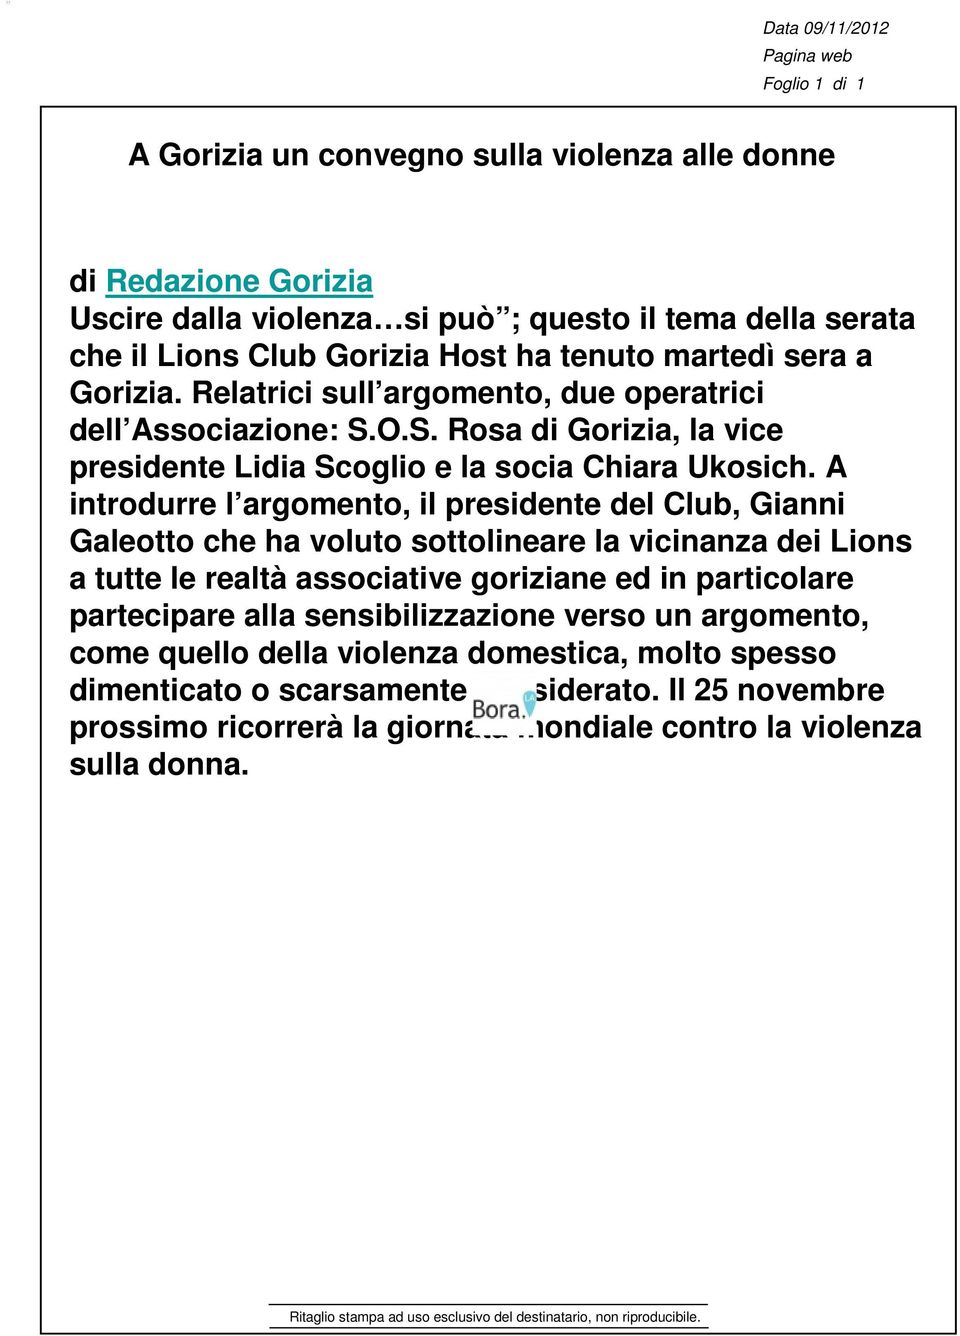 A introdurre l argomento, il presidente del Club, Gianni Galeotto che ha voluto sottolineare la vicinanza dei Lions a tutte le realtà associative goriziane ed in particolare partecipare